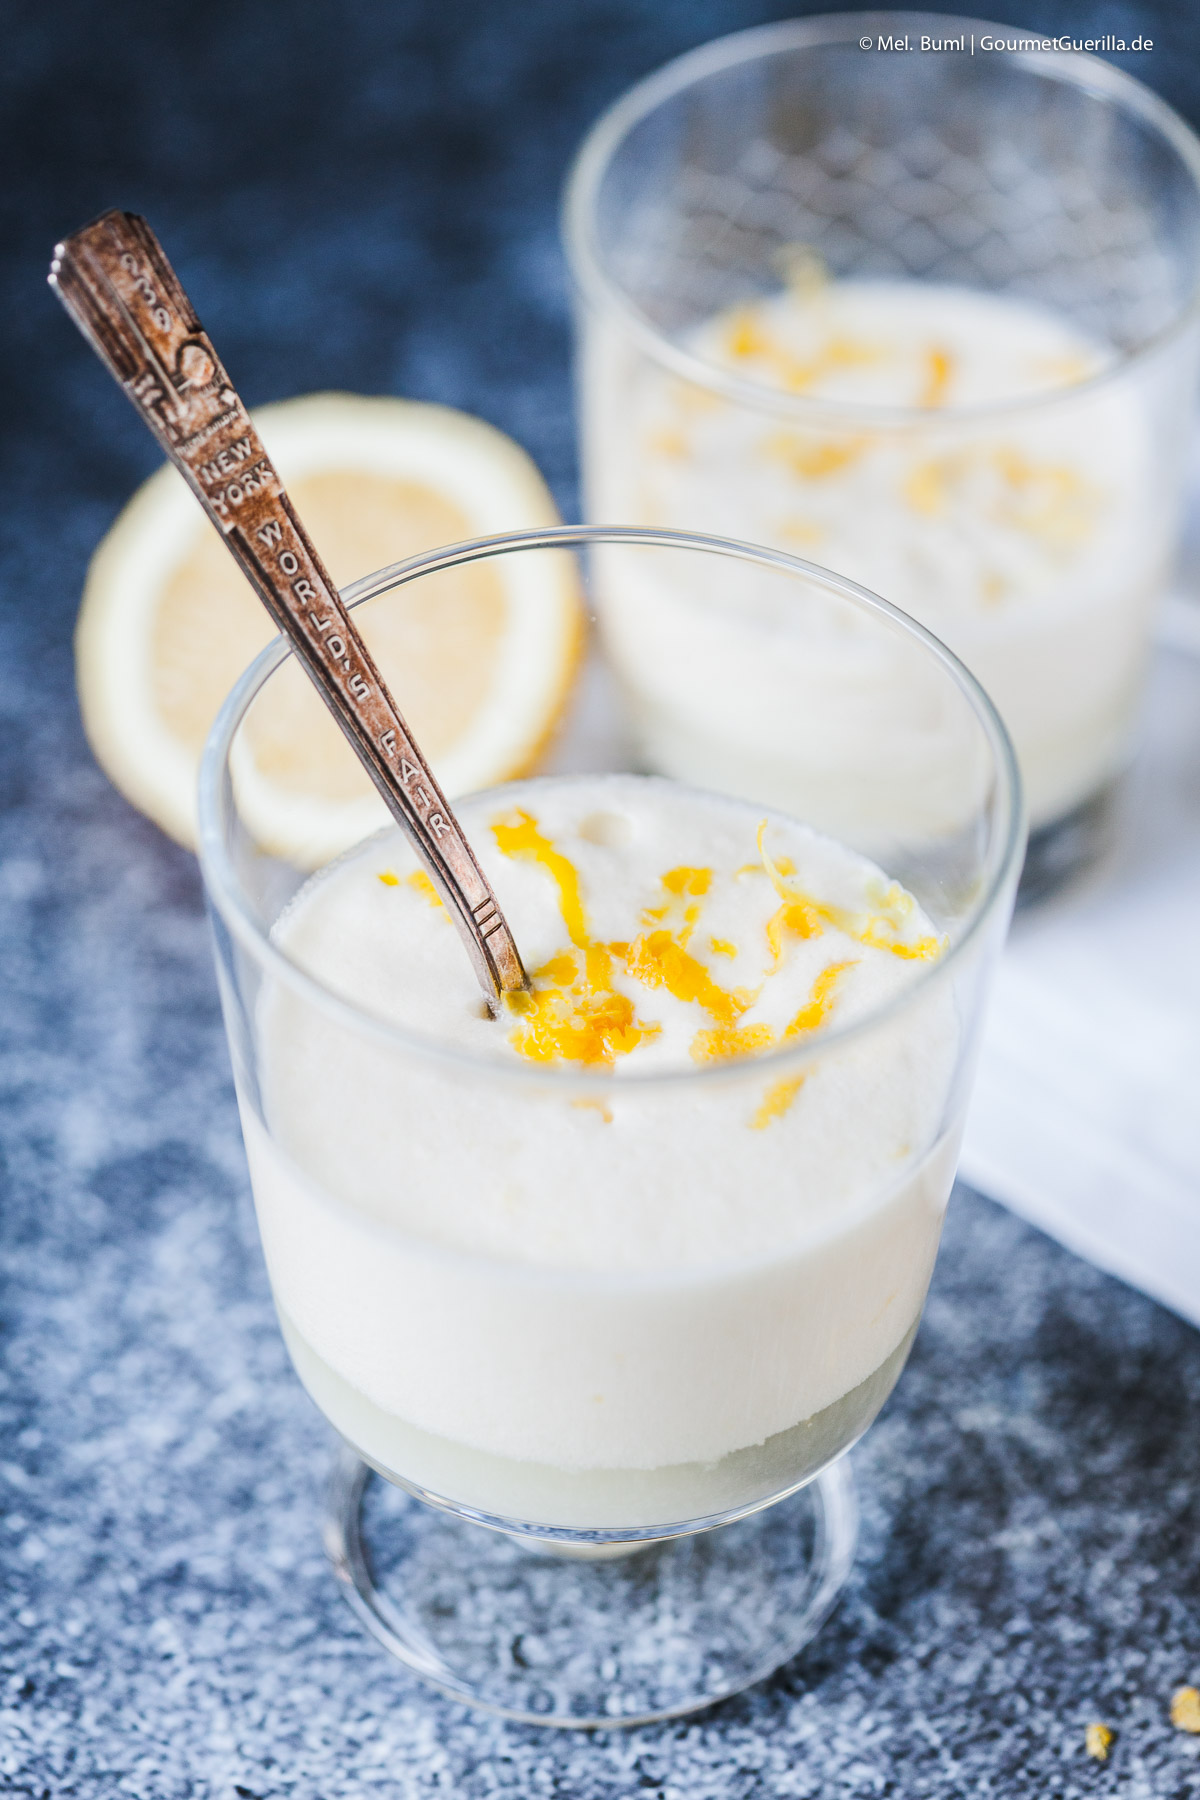 Syllabub - the typical English lemon cream with cream and alcohol | GourmetGuerilla.de